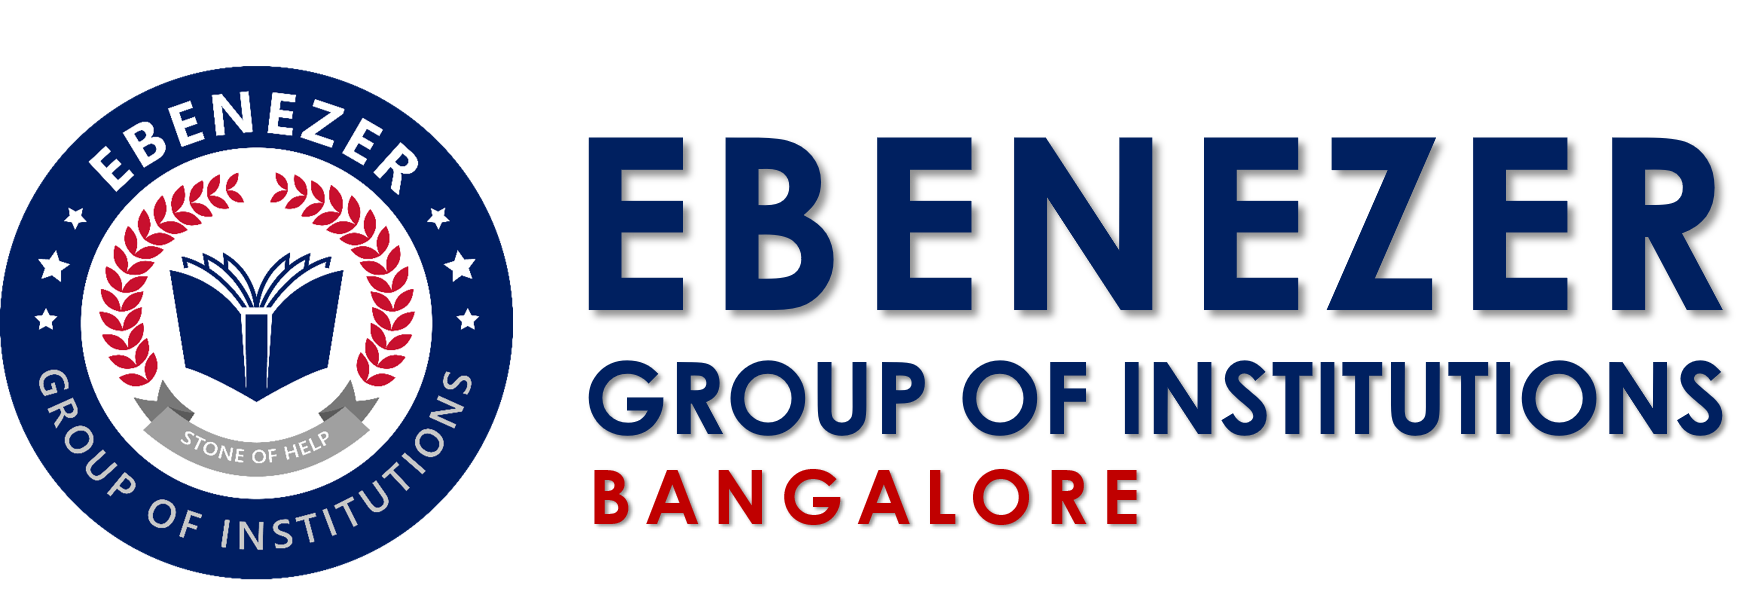 Ebenezer Group of Institutions ,India